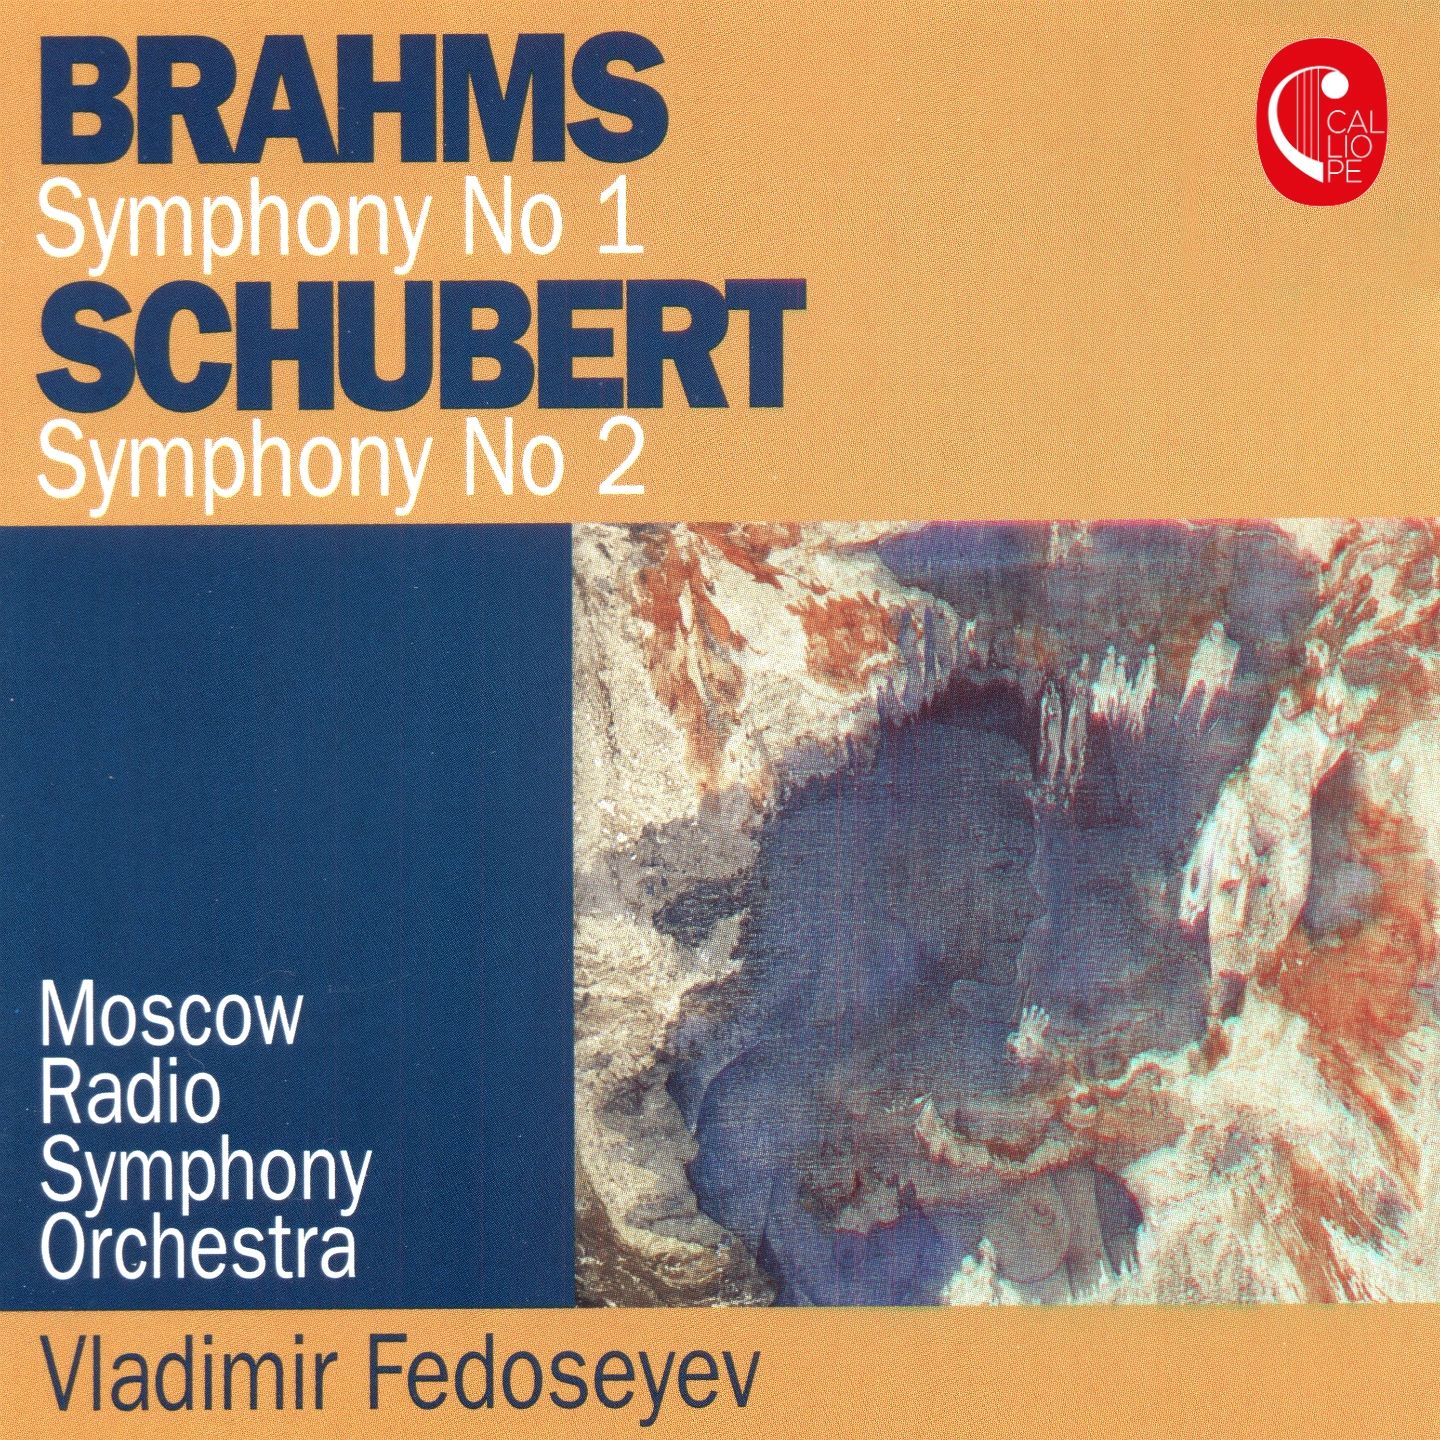 Brahms Symphony 1, Schubert Symphony 2 - Fedoseyev- [24-44]